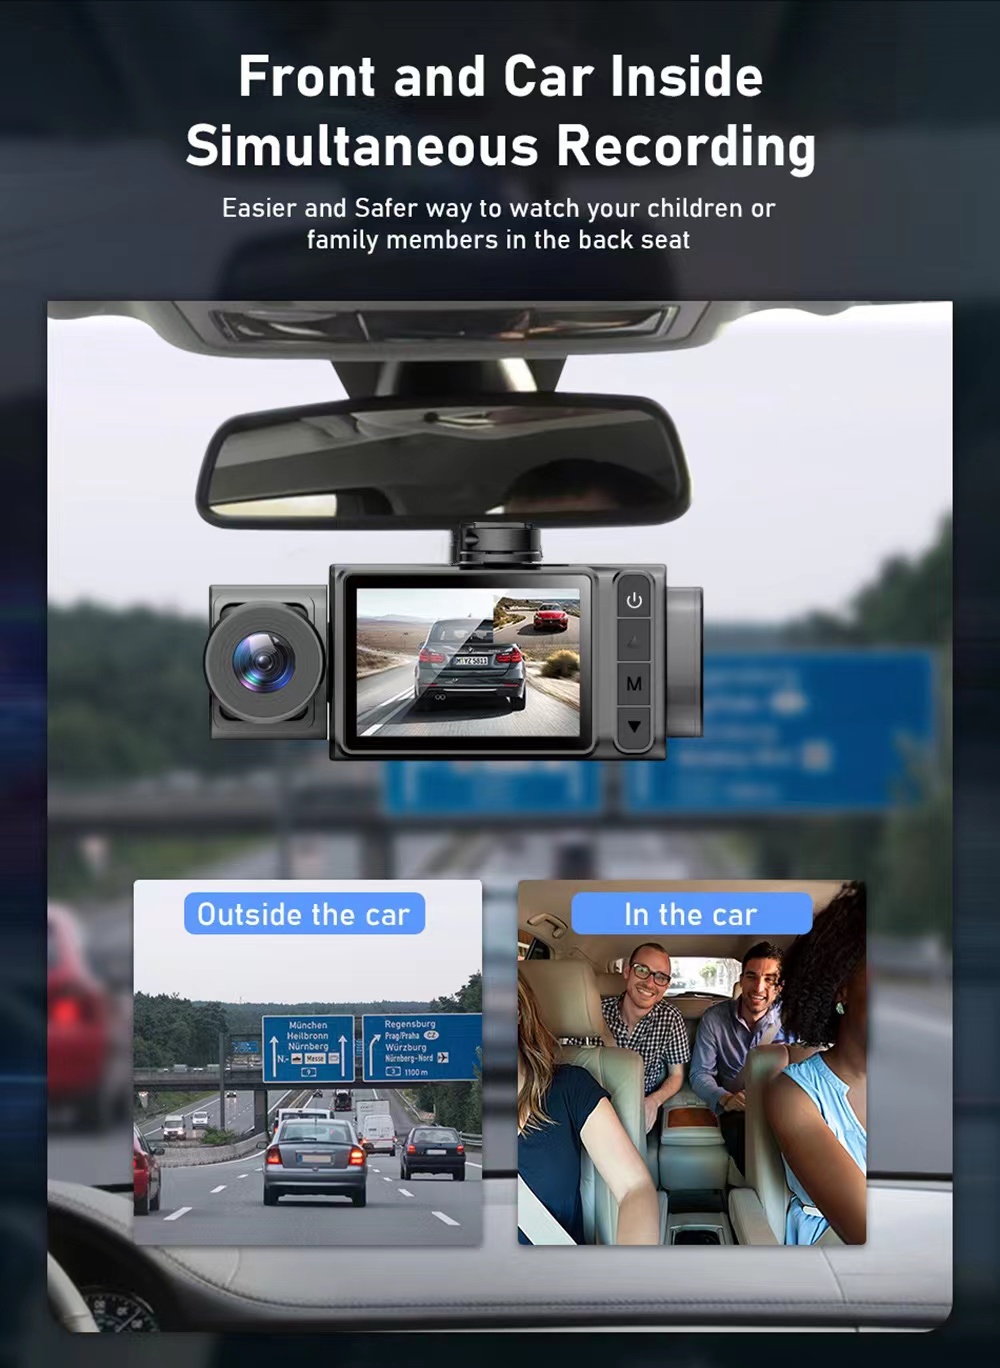 2 pouces HD 1080P 3 objectifs S11 Enregistreur vidéo DVR de voiture Dash Cam Caméra arrière 130 degrés grand angle ultra résolution avant avec intérieur avec détection de mouvement de la caméra arrière